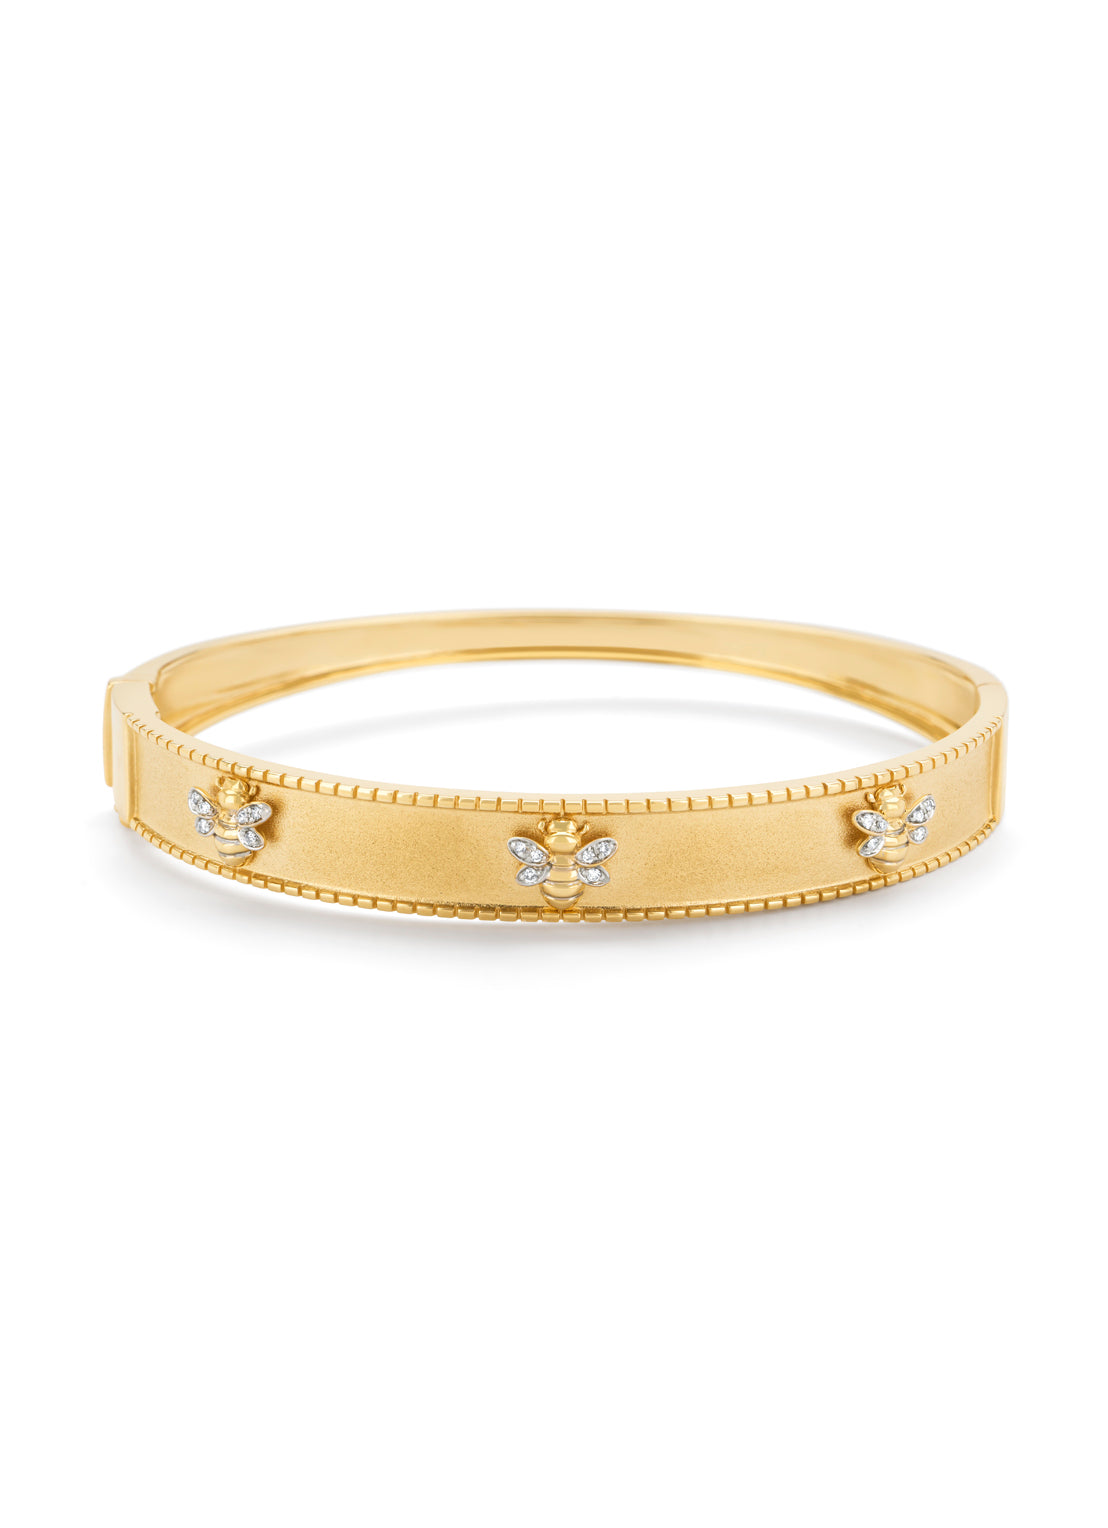 Yellow gold bracelet, 0.06 ct diamond, Queen Bee